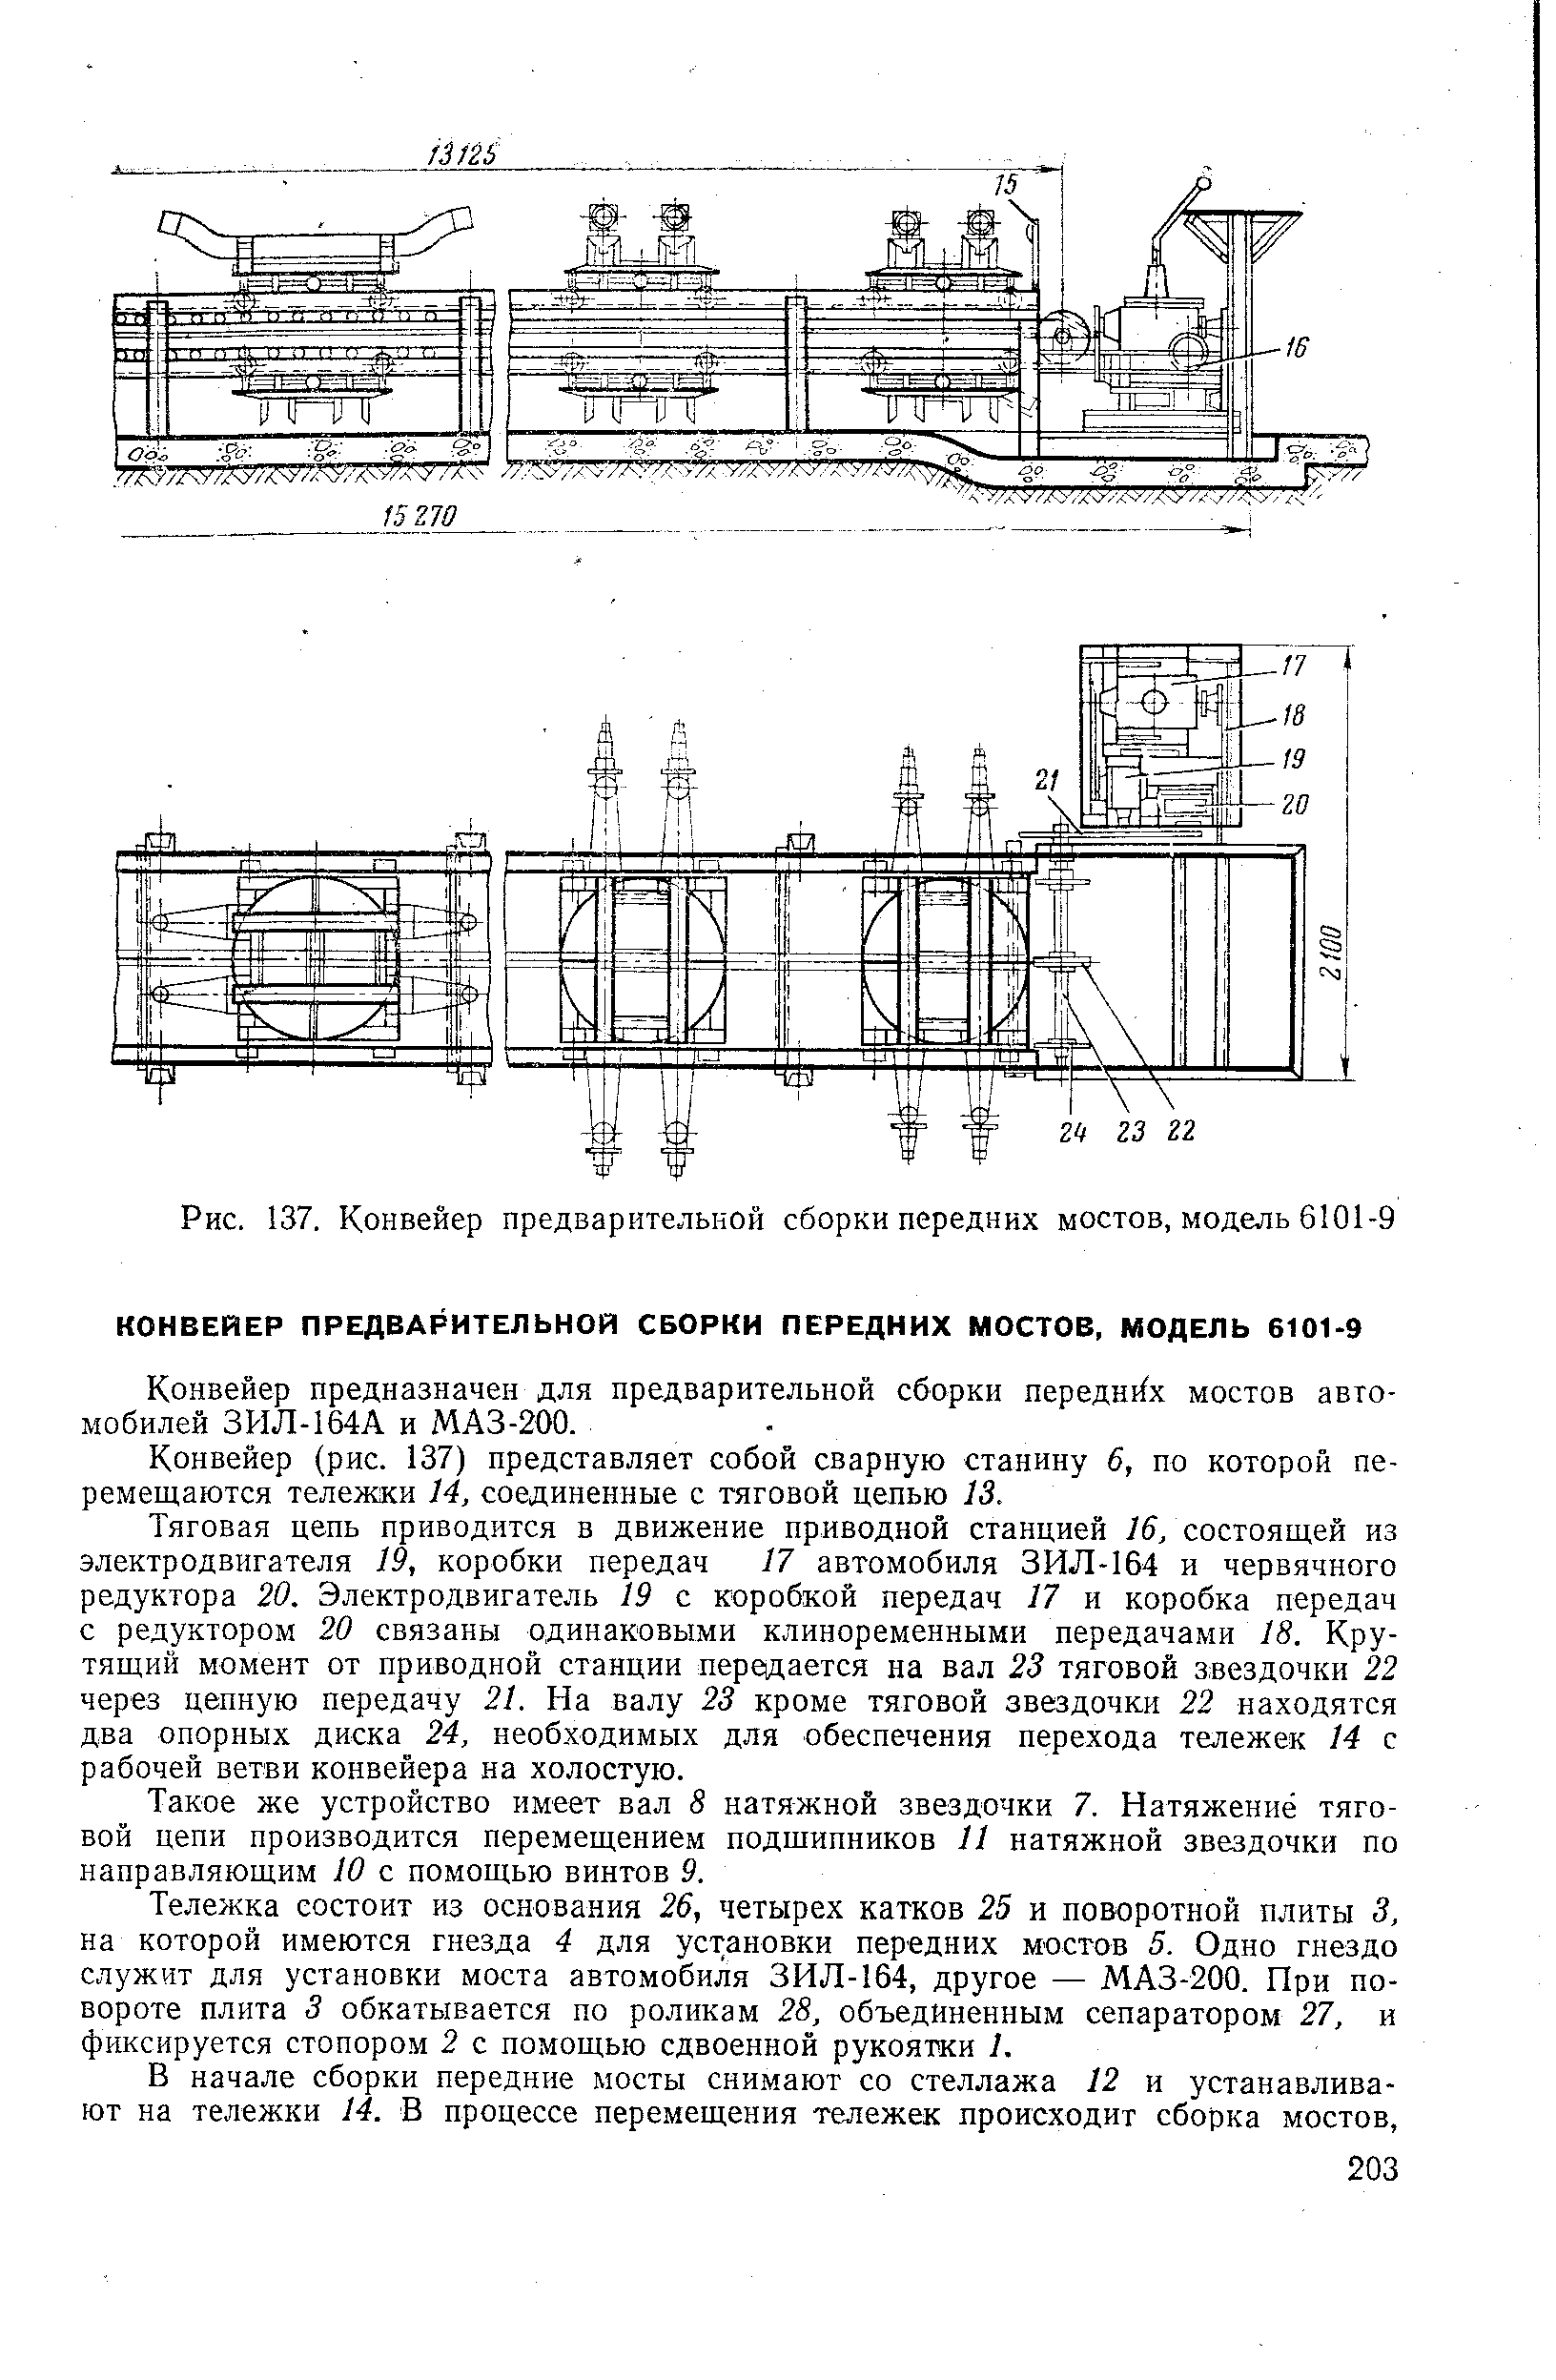 Рис. 137. Конвейер предварительной сборки передних мостов, модель 6101-9
